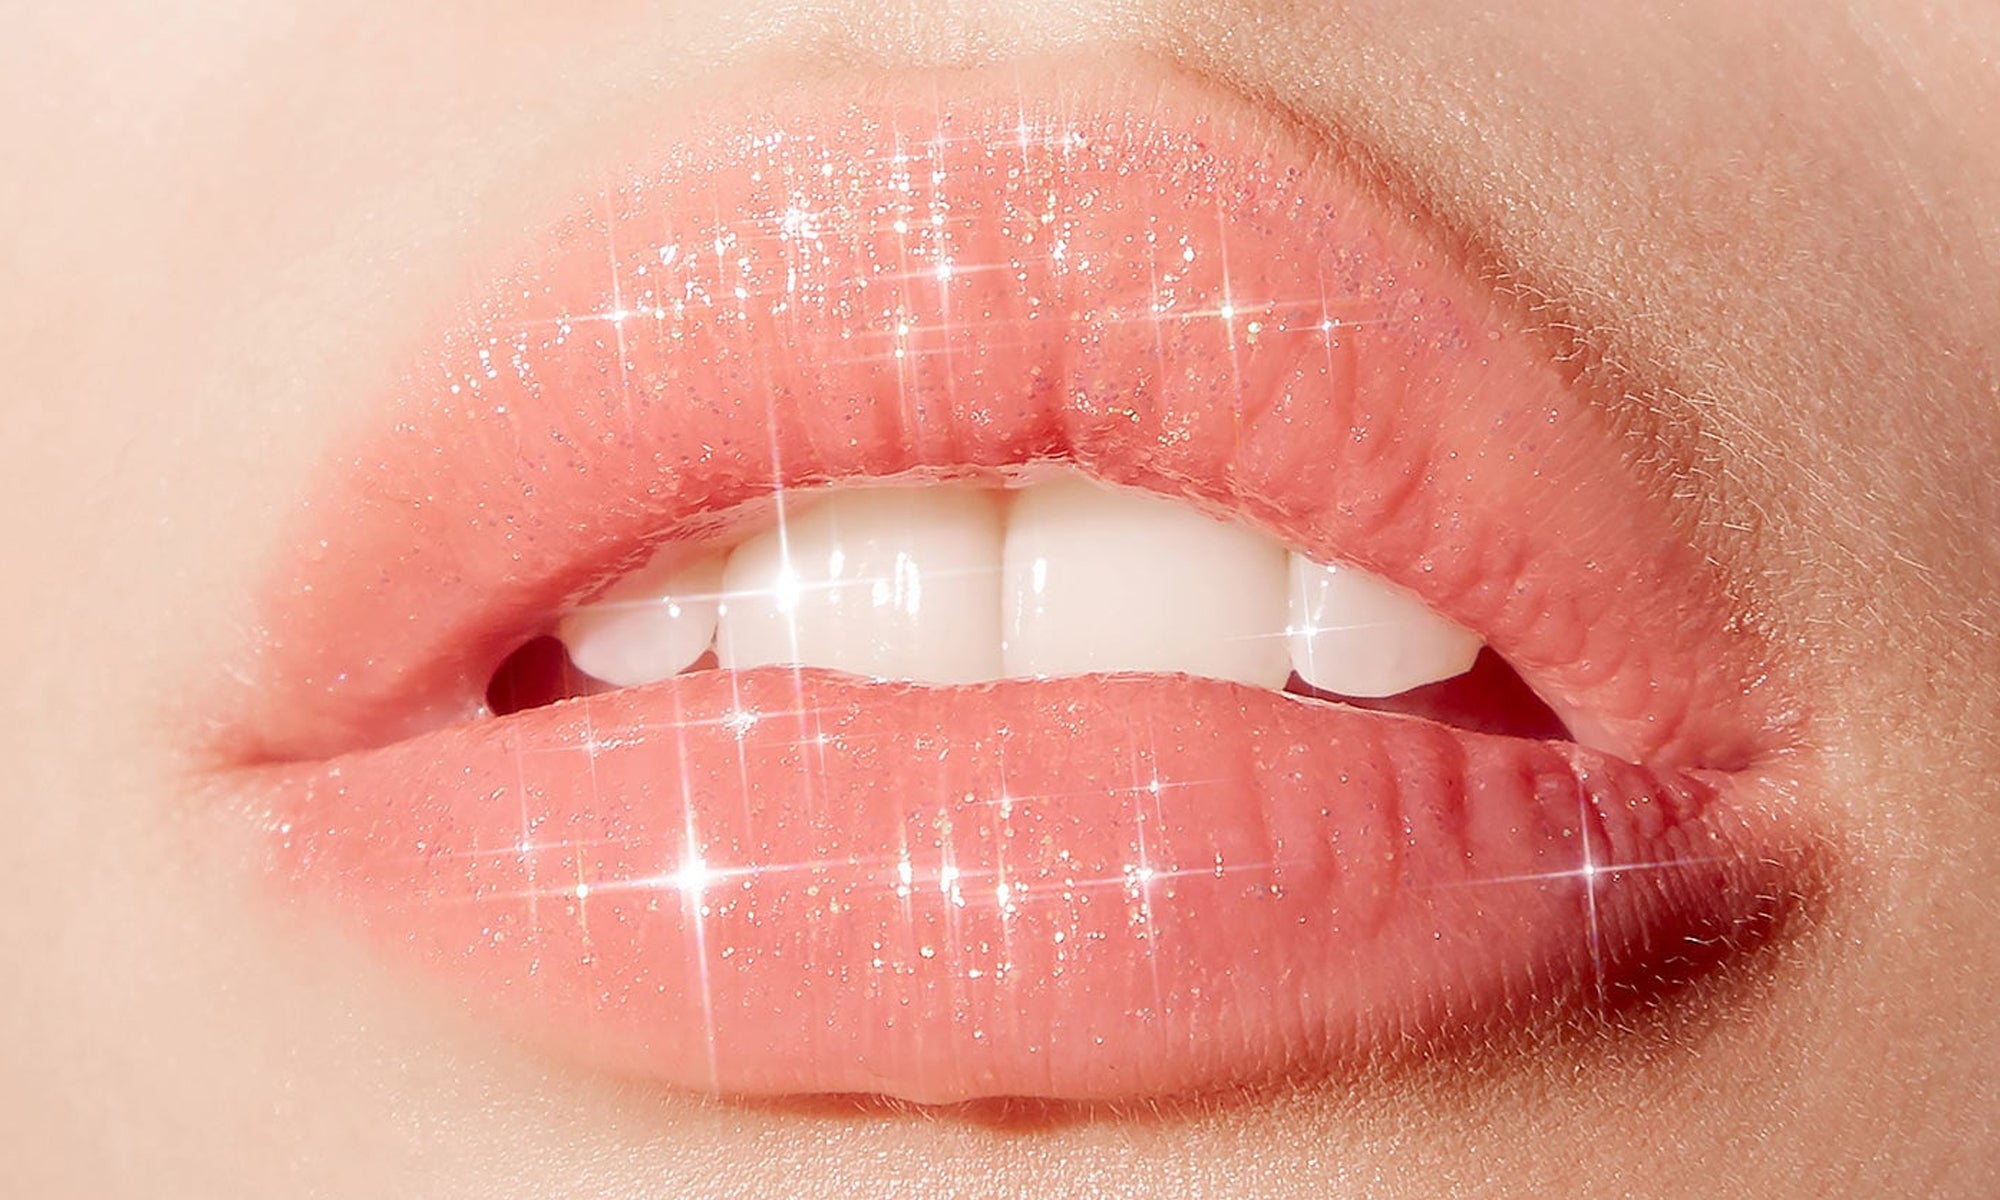 губы без помады фото женские пухлые